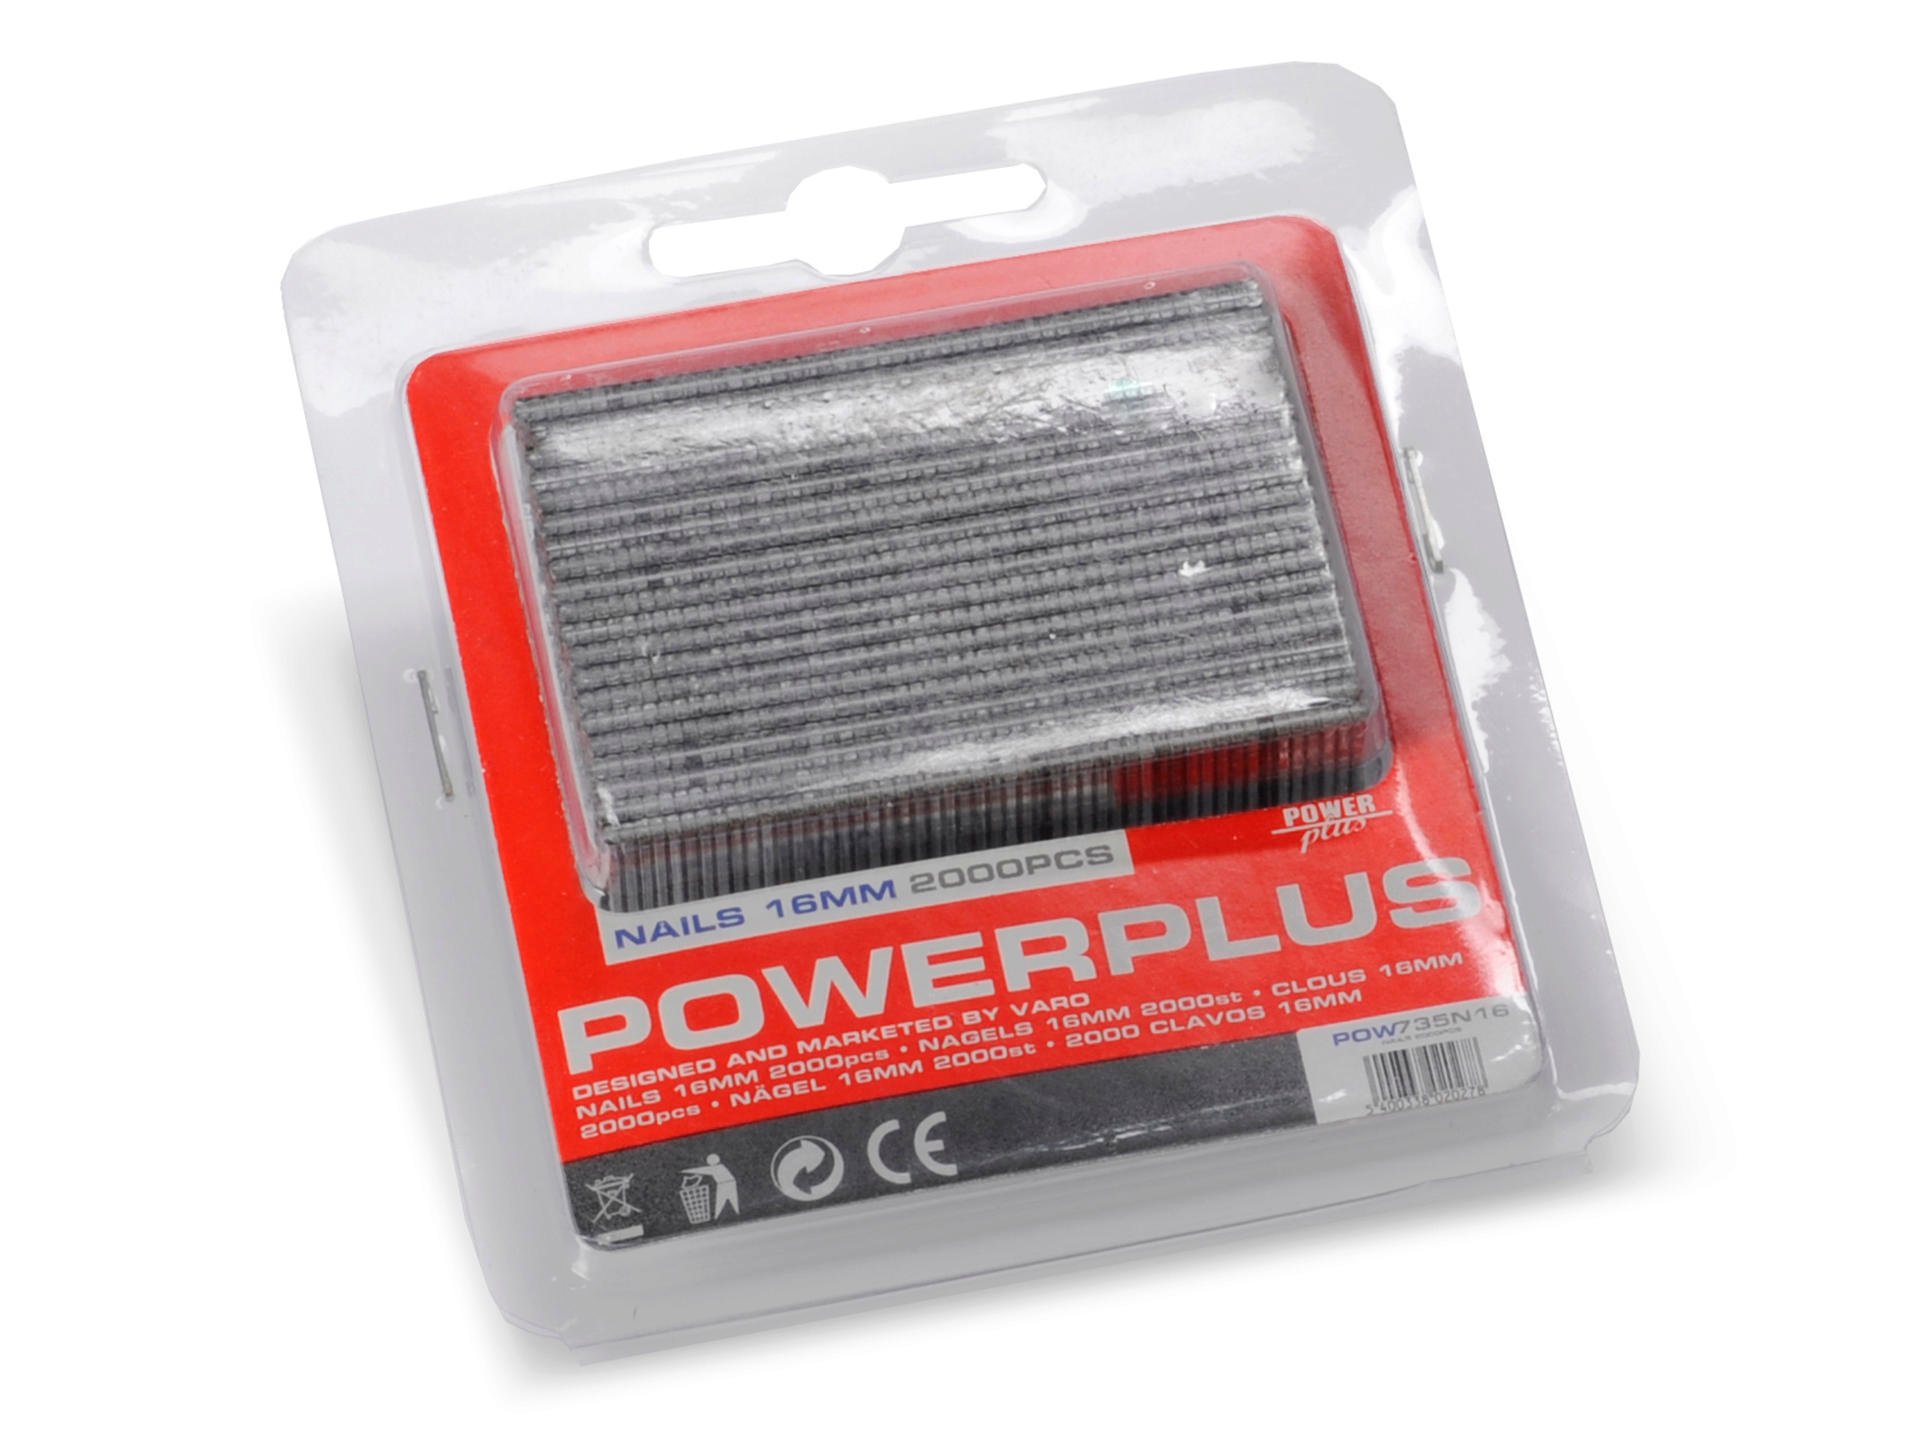 Powerplus POW735/N16 nagels voor compressor 16mm 2000 stuks